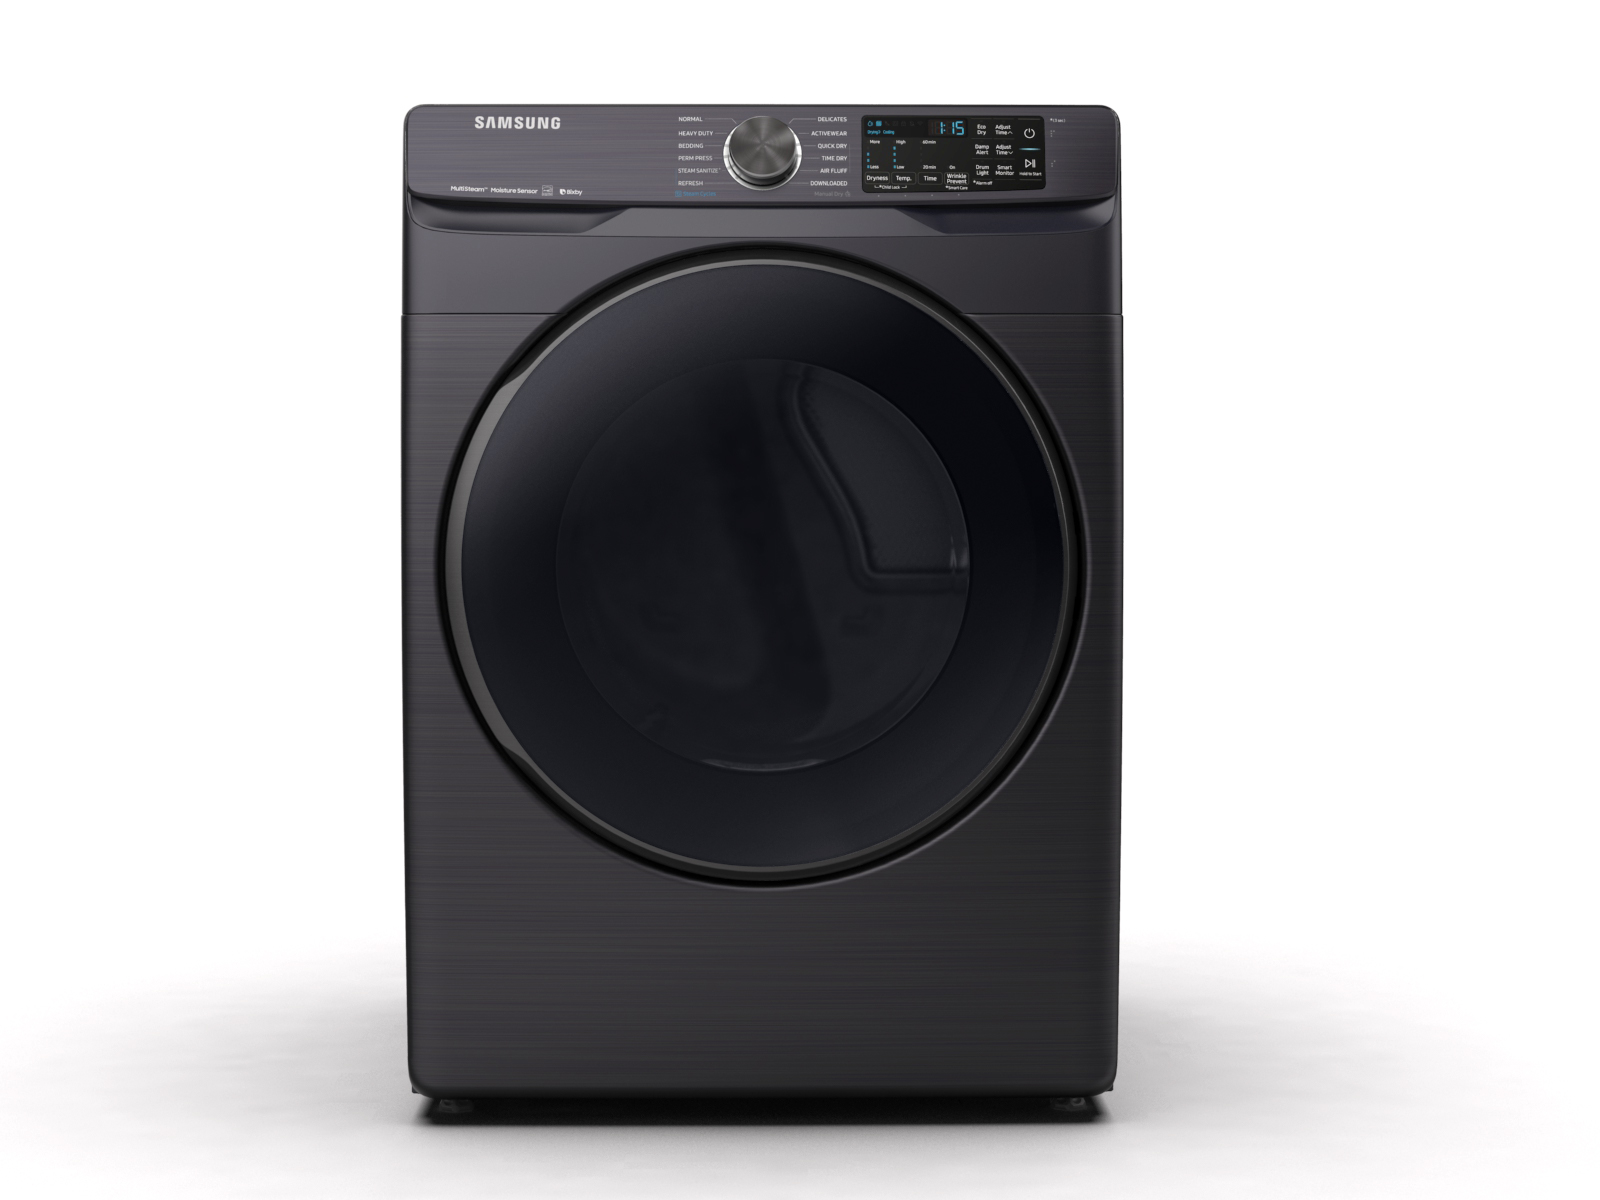 https://image-us.samsung.com/SamsungUS/home/home-appliances/dryers/electric/pdp/dve50r8500v-a3/updated_360_spin_v2/DVG50R8500V-01.jpg?$product-details-jpg$